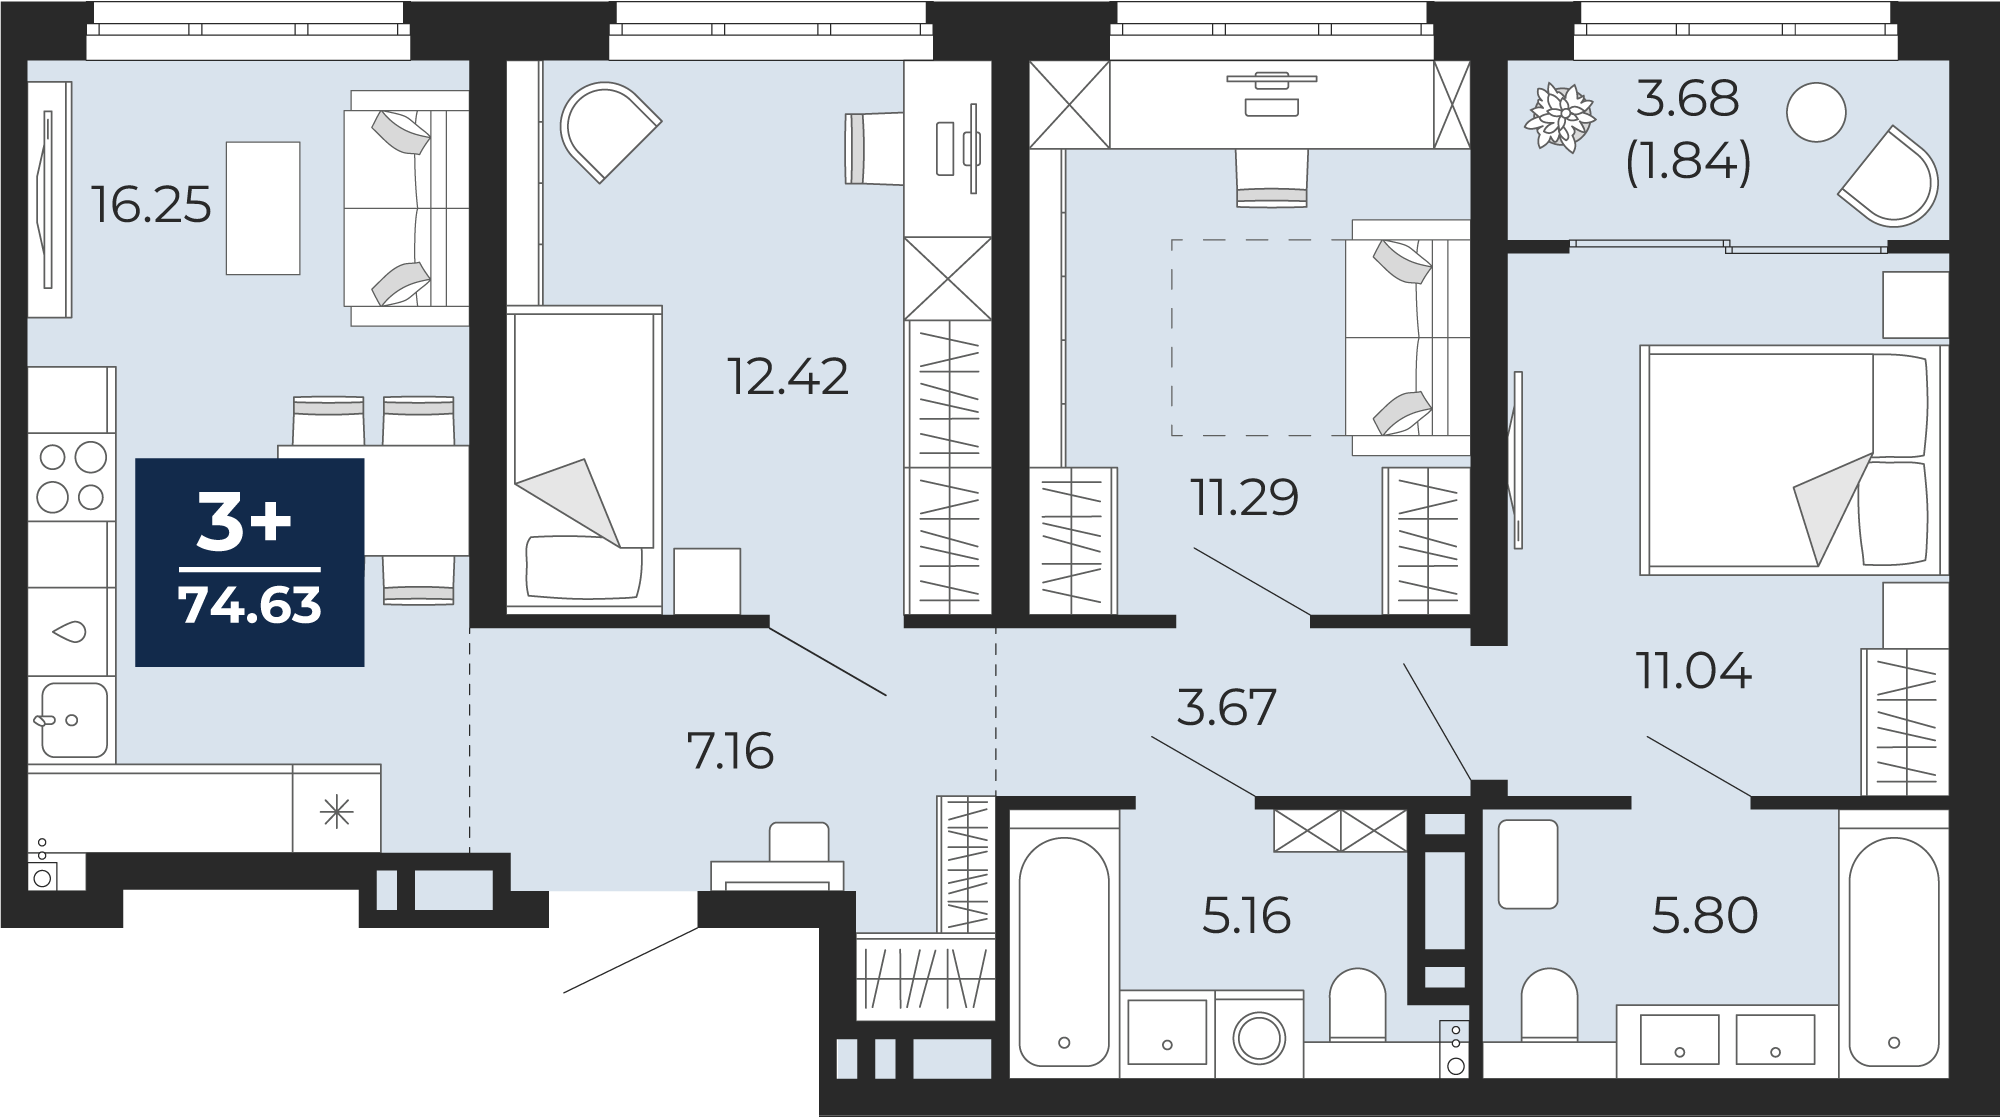 Квартира № 266, 3-комнатная, 74.63 кв. м, 10 этаж